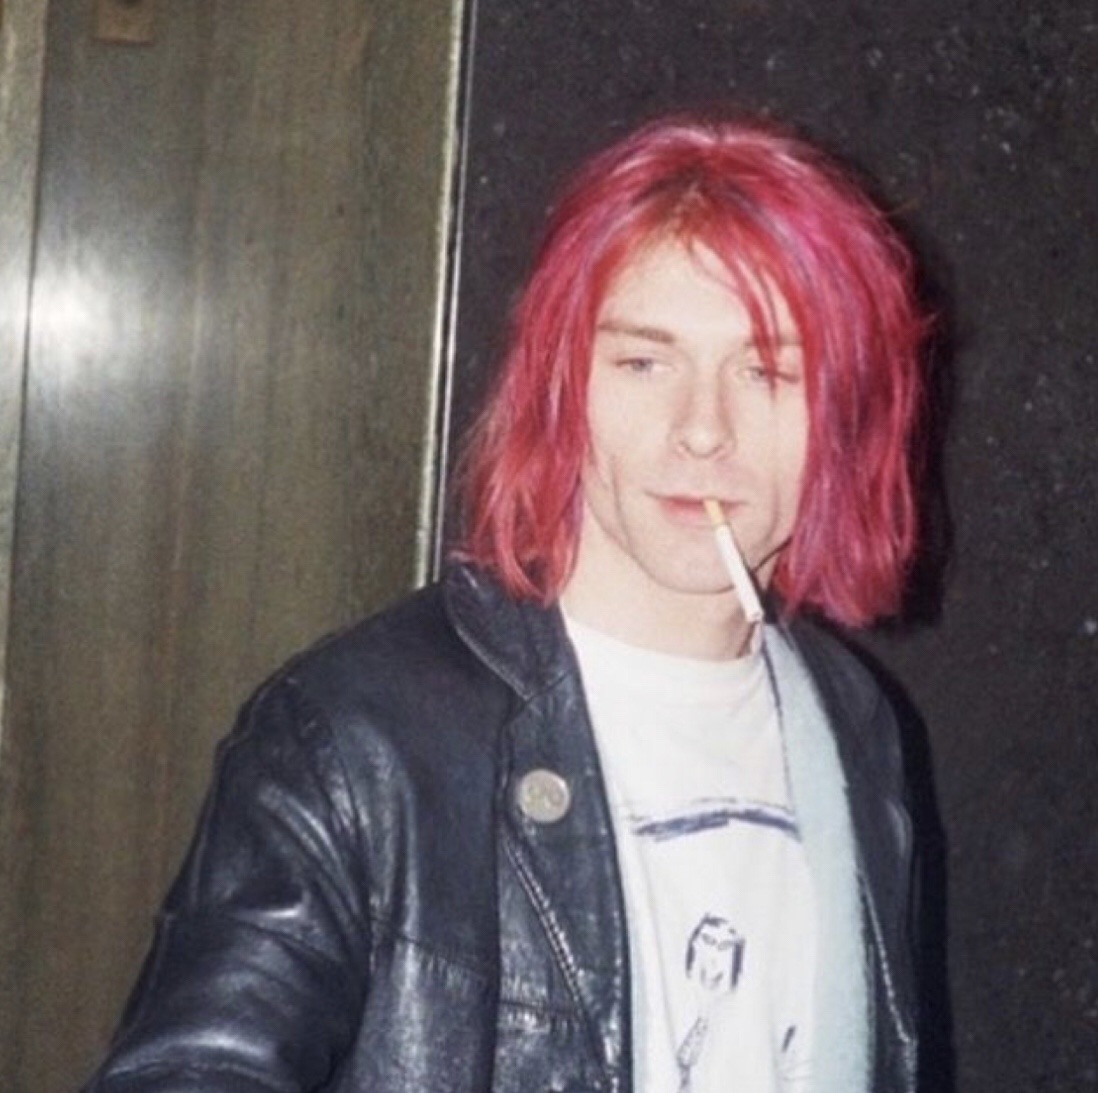 Kurt Cobain Pink Hair - zuridesignshk